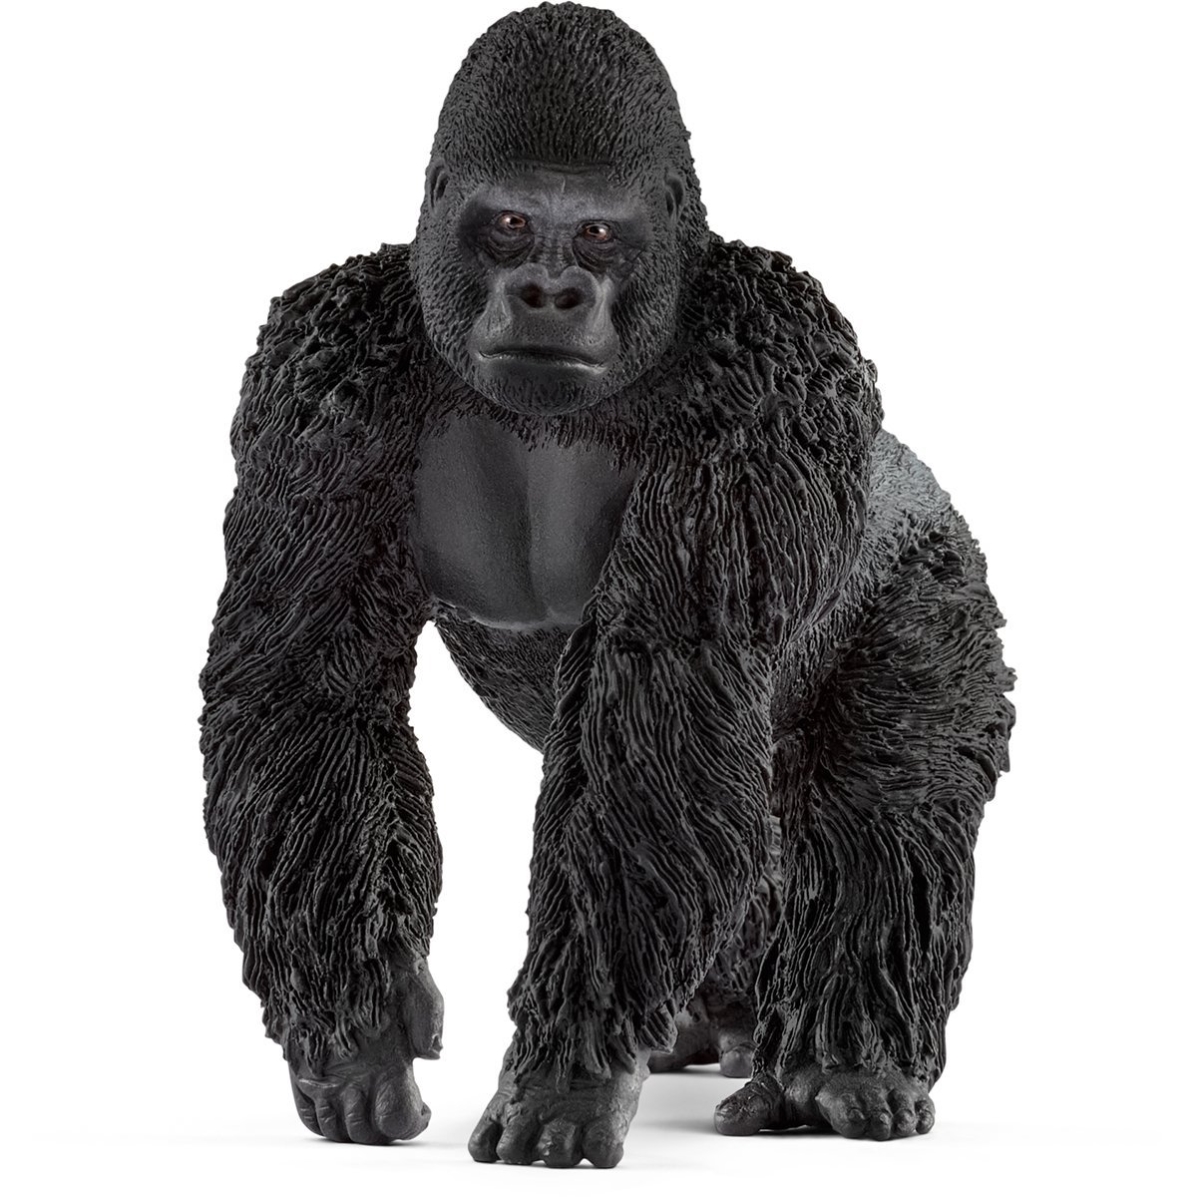 Picture of Schleich North America 224612 Male Gorilla Toy Figure, Black